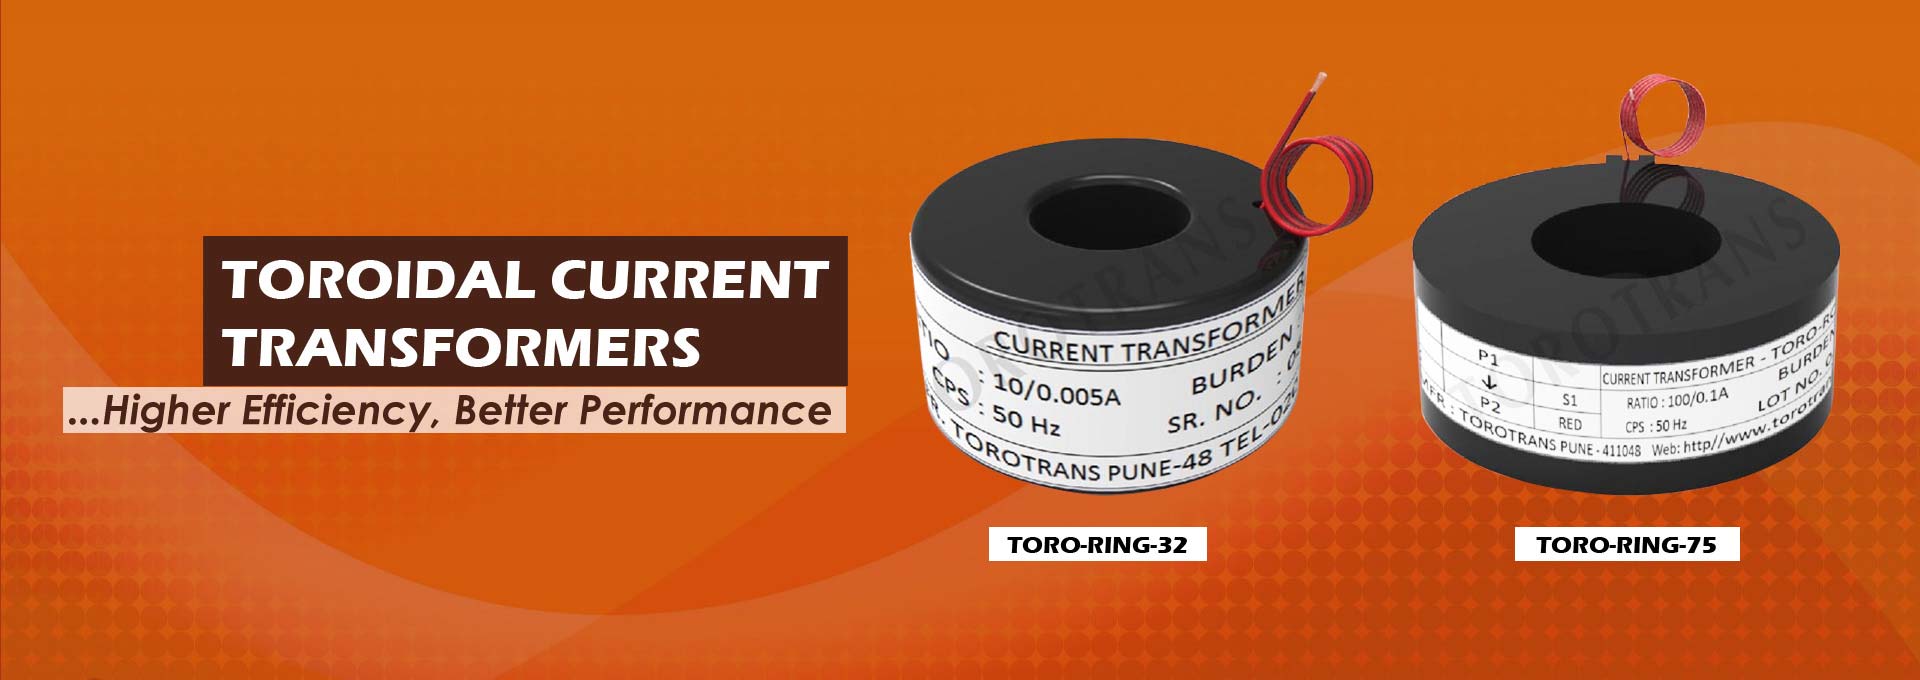 Toroidal Transformer Suppliers